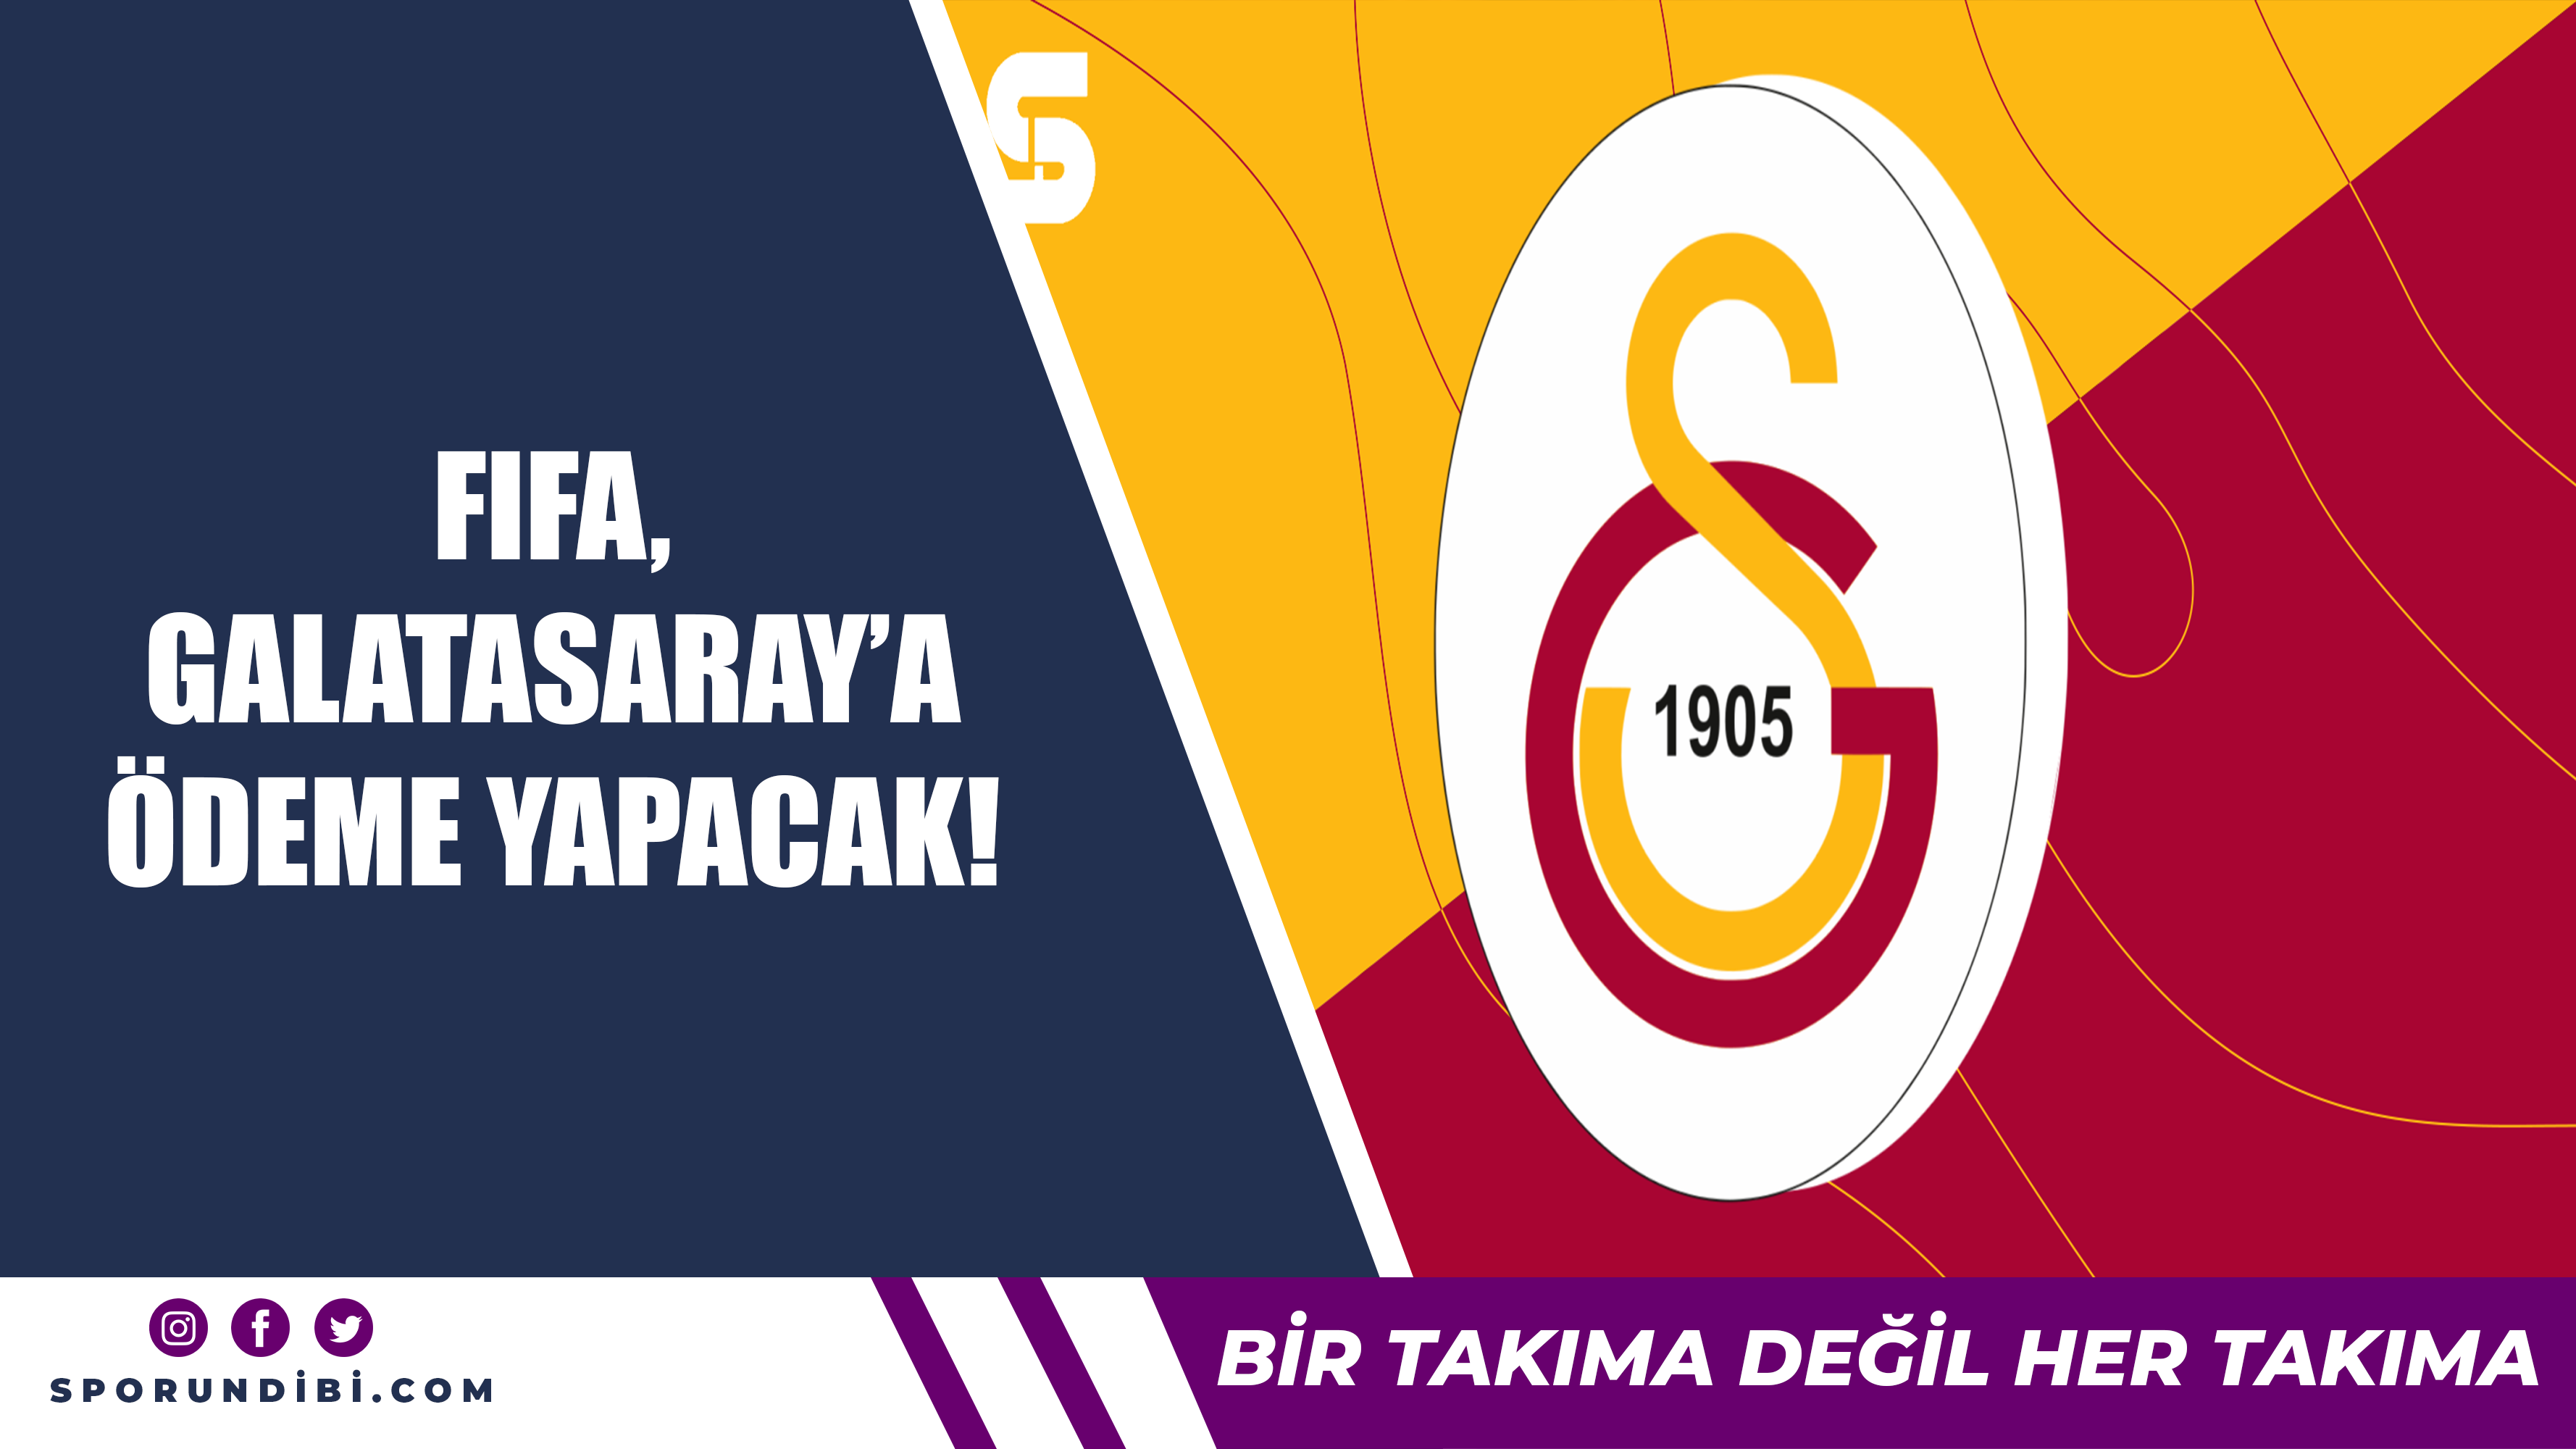 FIFA, Galatasaray'a ödeme yapacak!